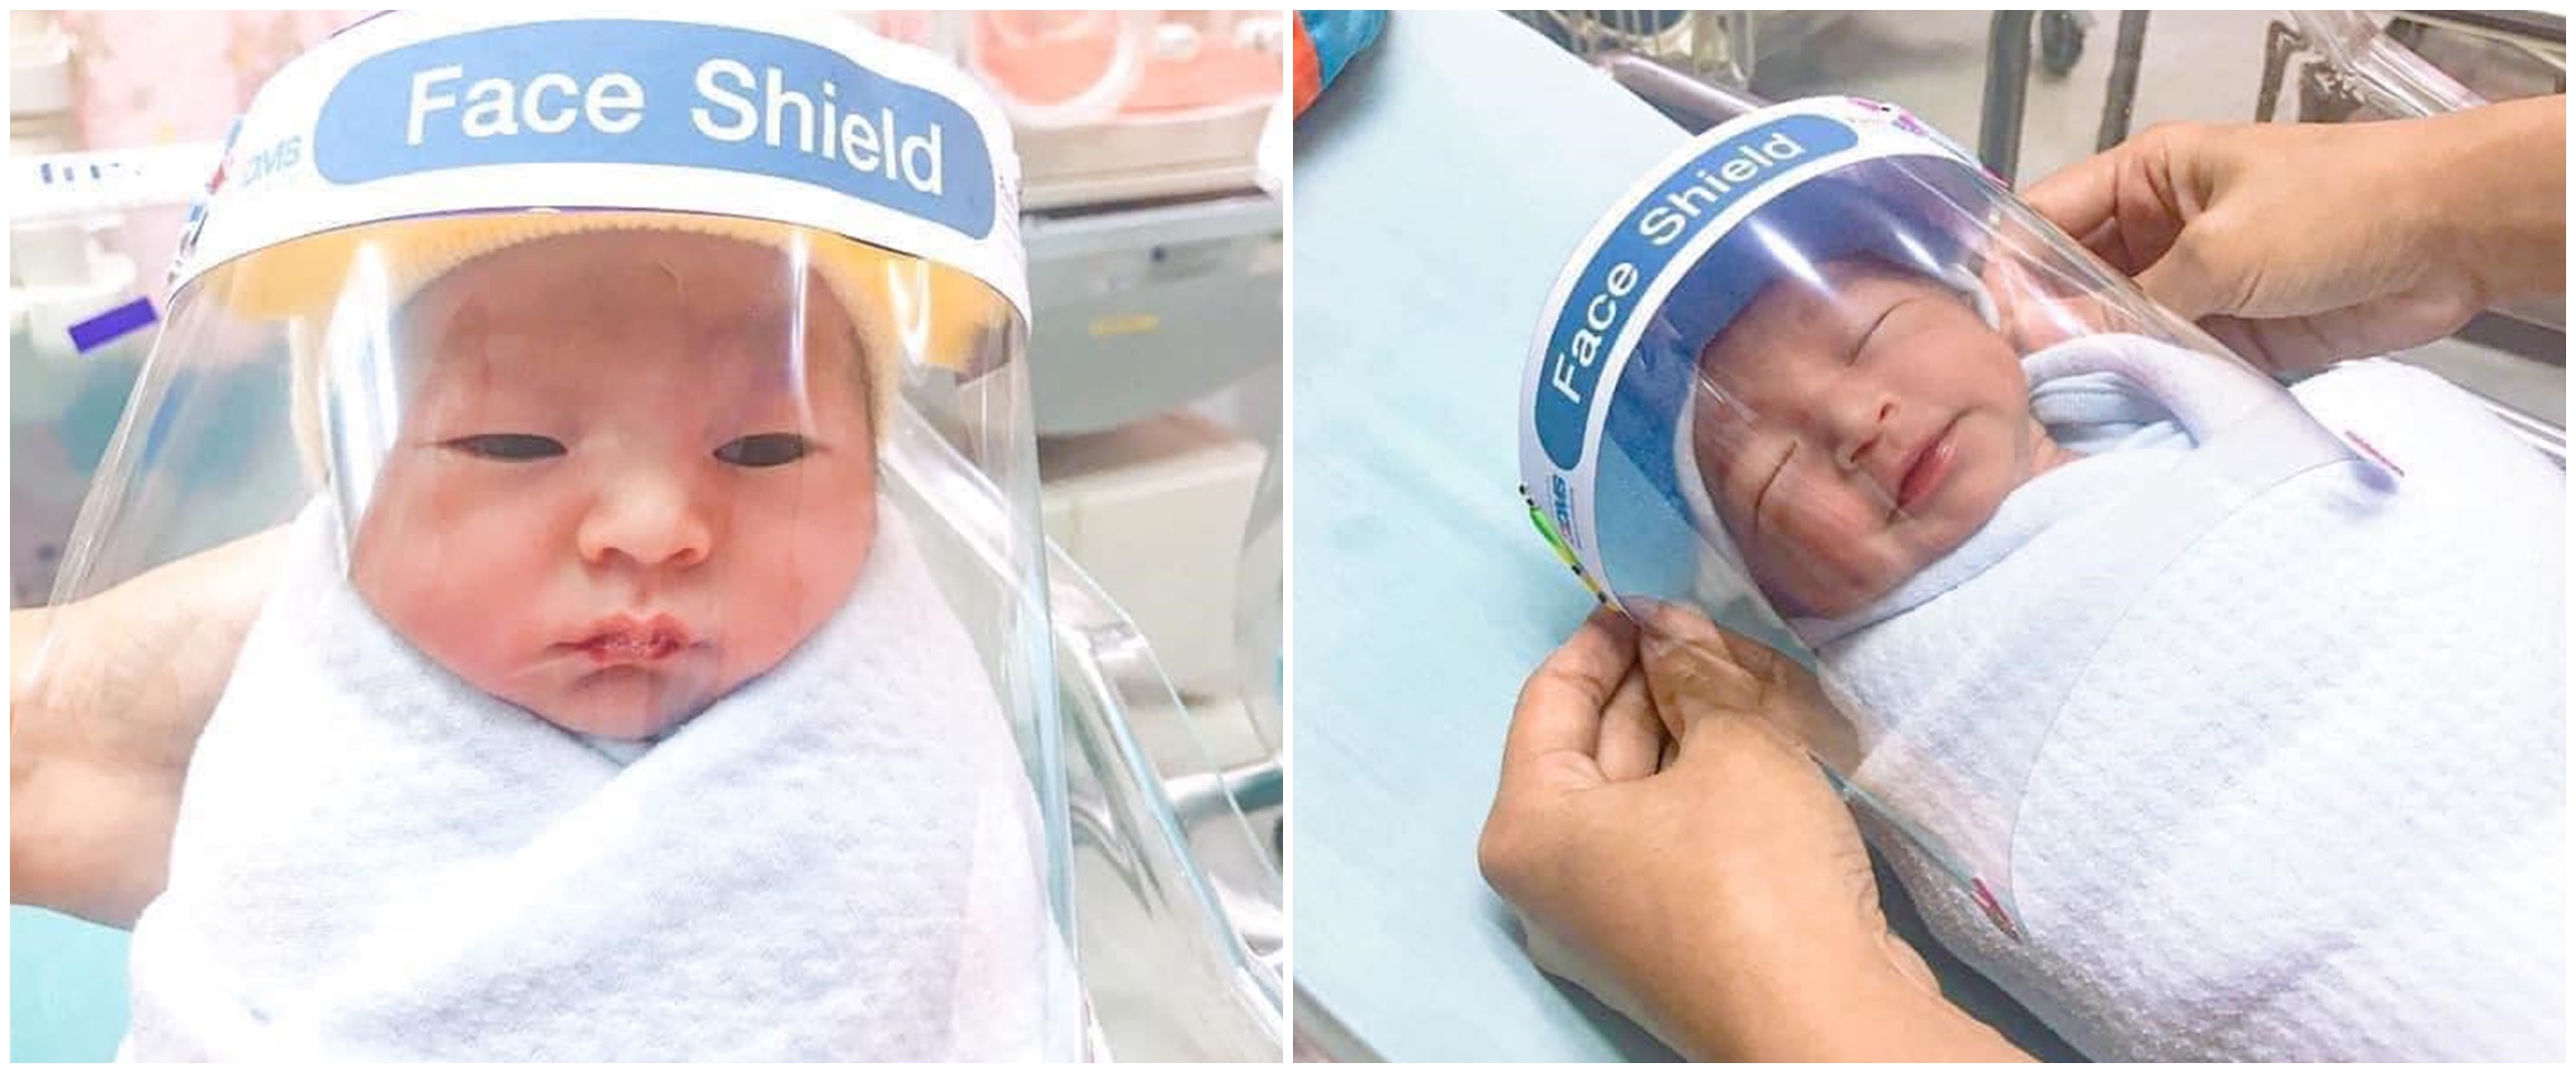 Cegah corona, bayi lahir di negara ini dipasangi pelindung wajah